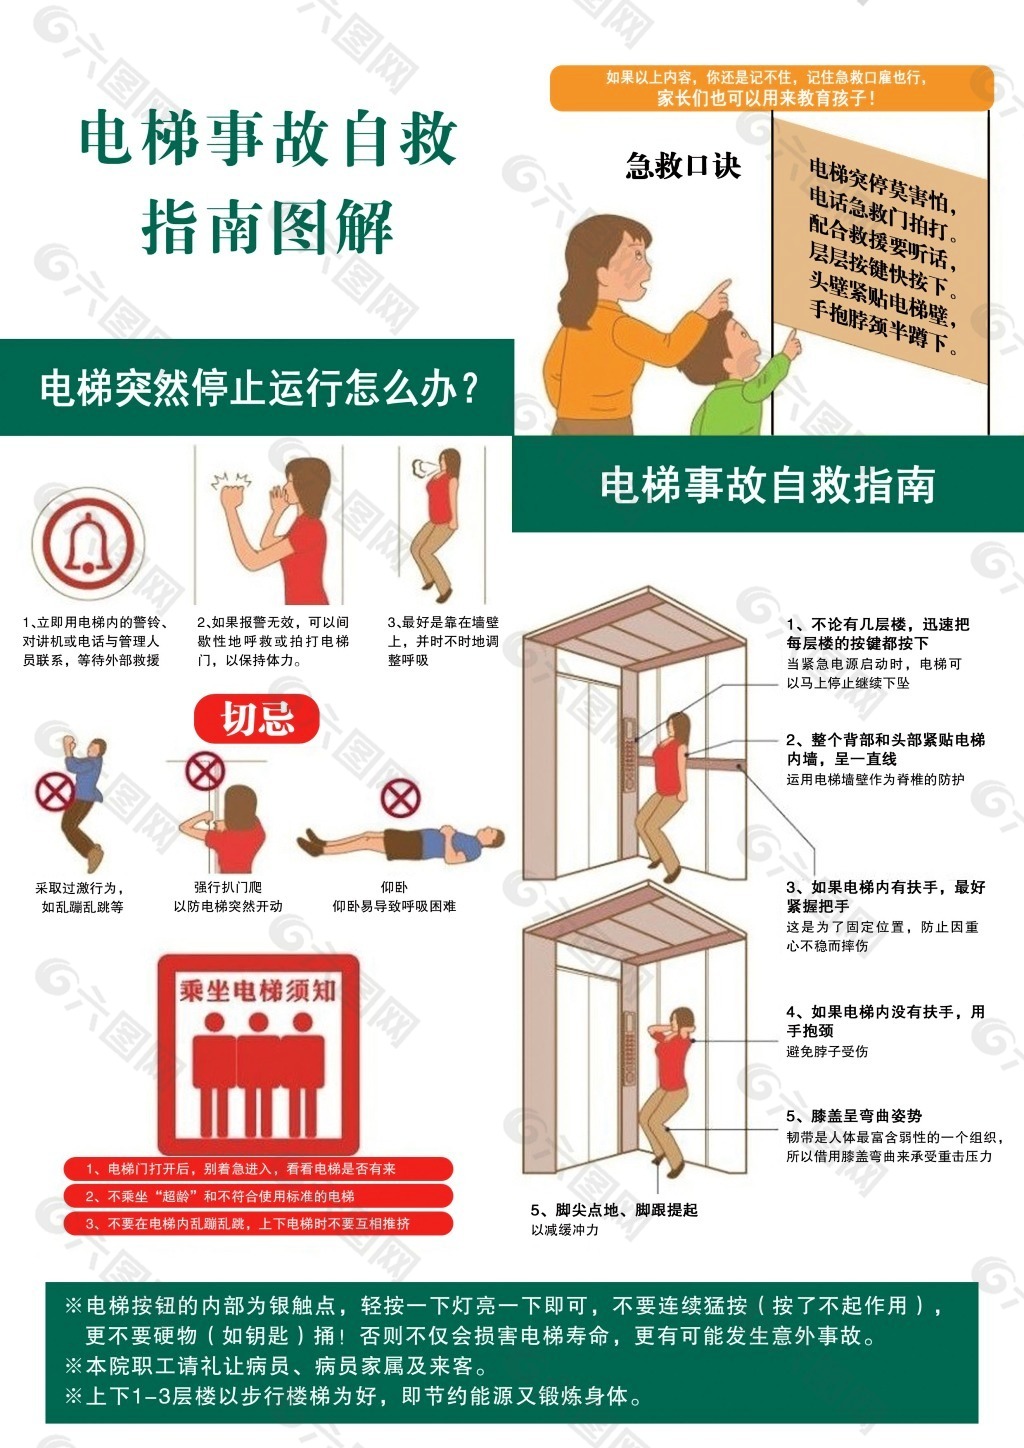 【我为群众办实事】电梯事故救援应急演练来了！ - 城市名片 --中国泰宁在线